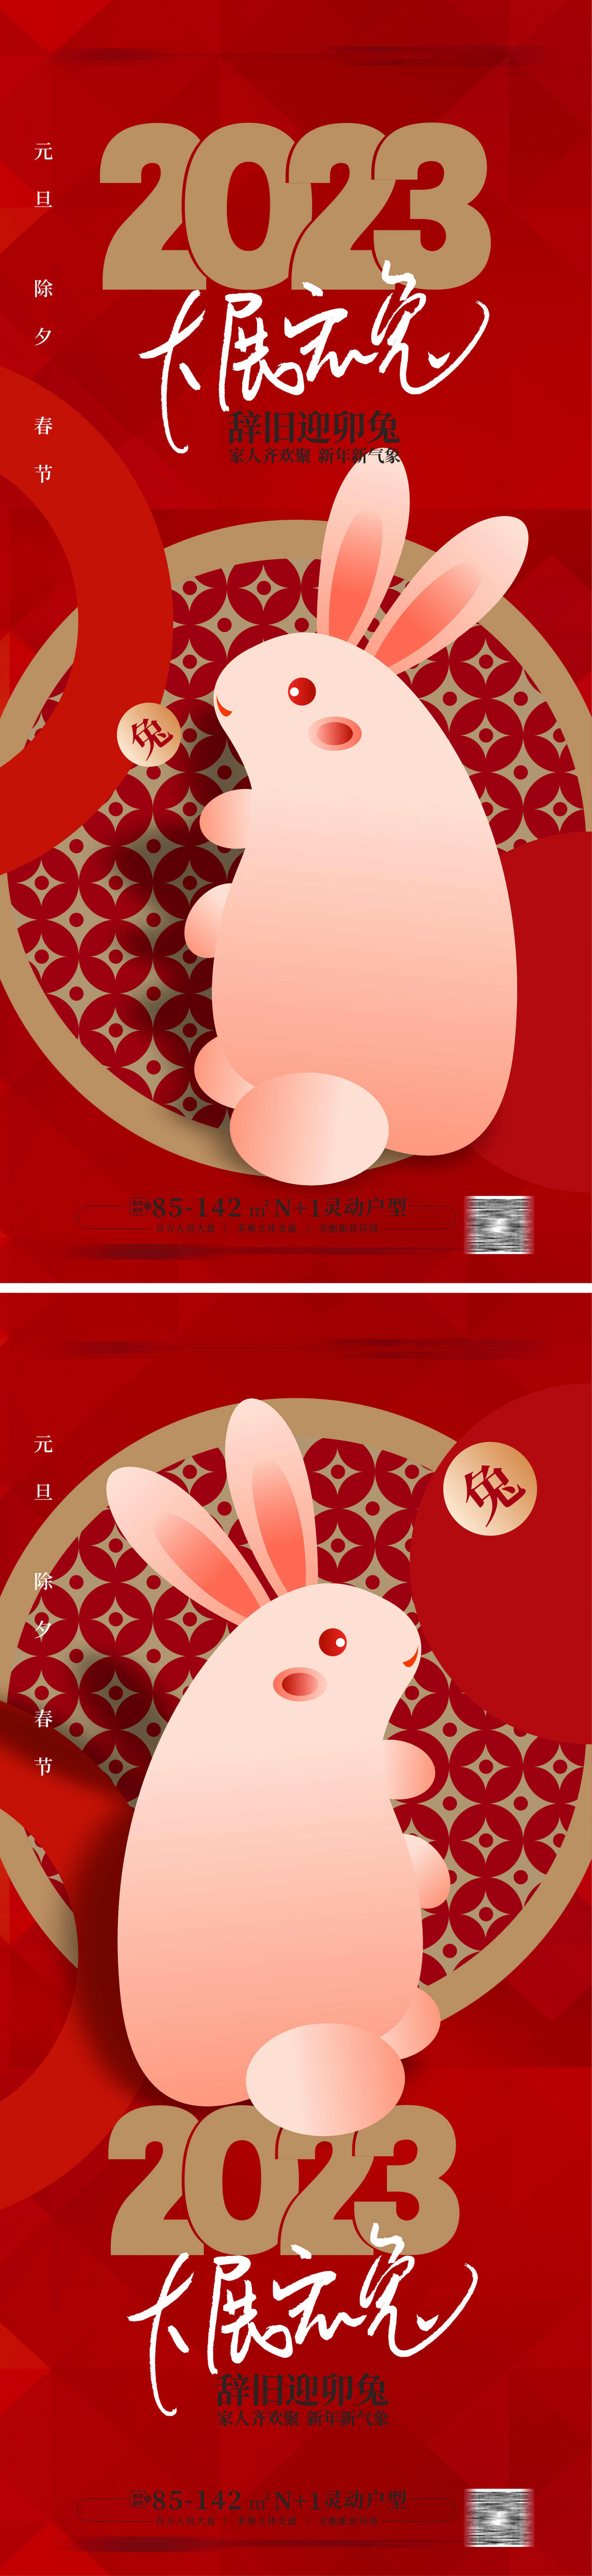 海报 地产 公历节日 元旦节 2023 兔年 兔子